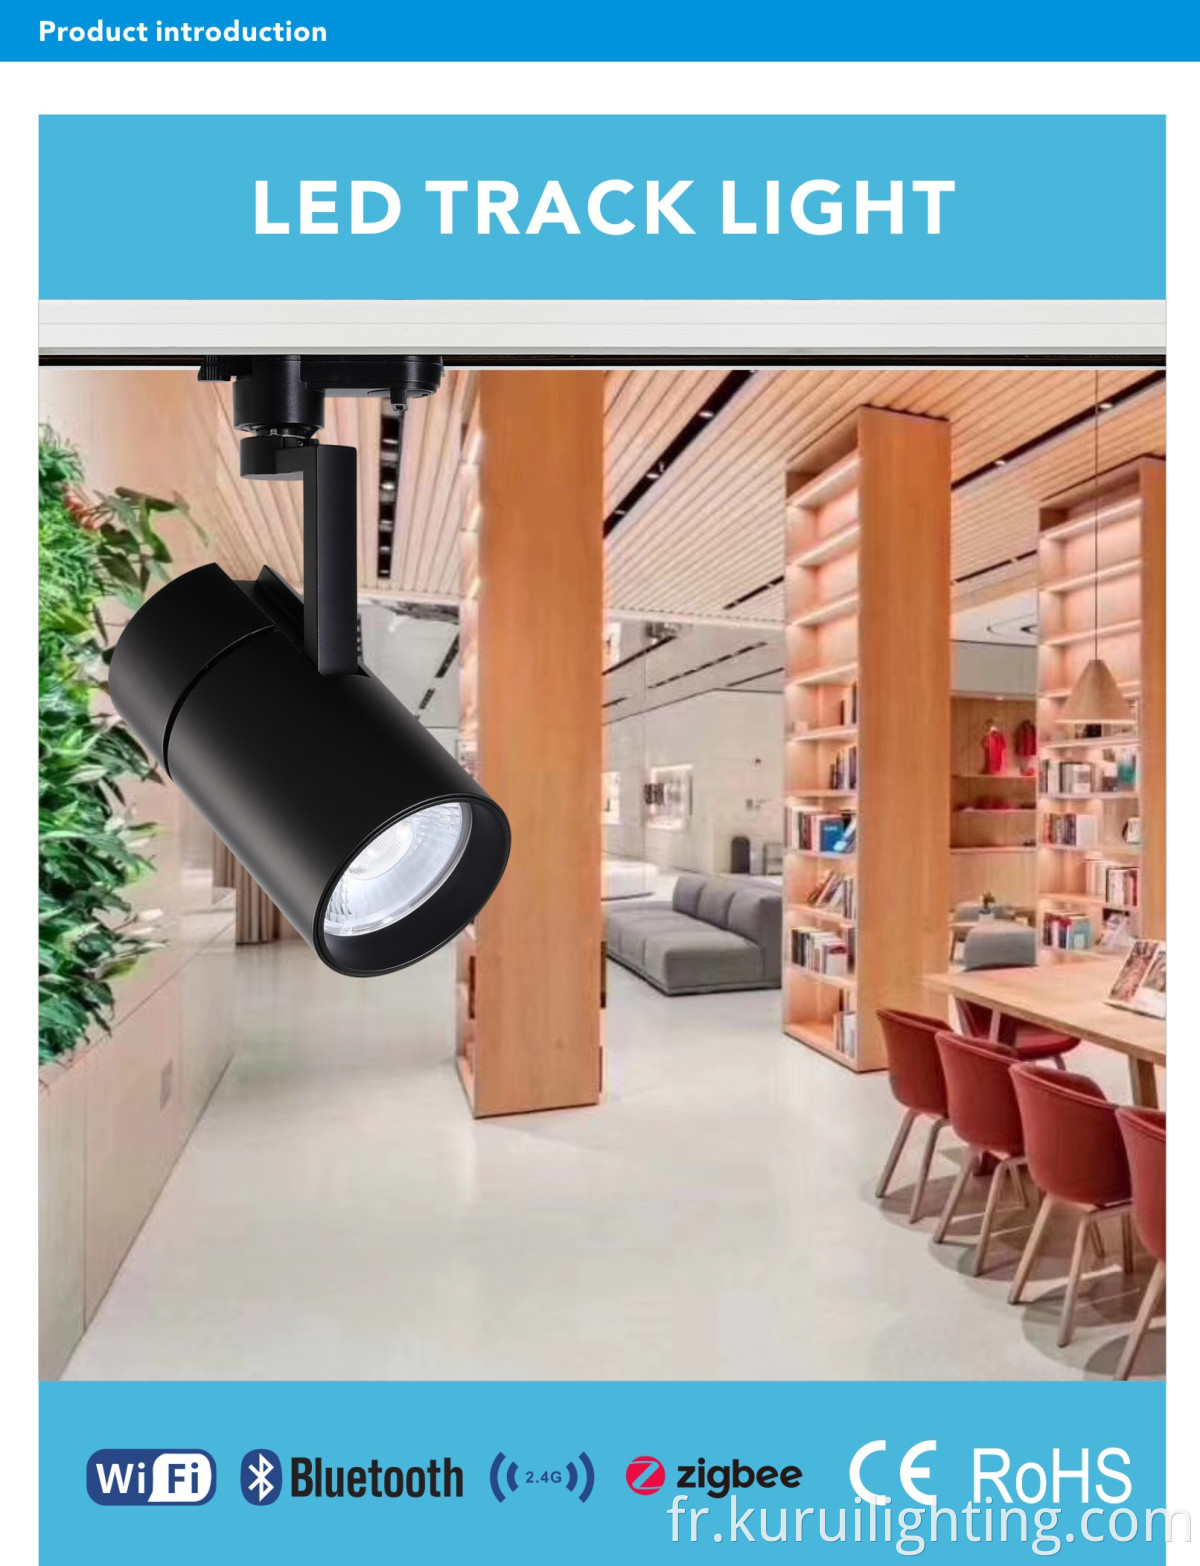 Éclairage de rail de voie commerciale 35W / 40W LED pour la salle d'art de la salle d'exposition Hotel Art Gallery Système de rail